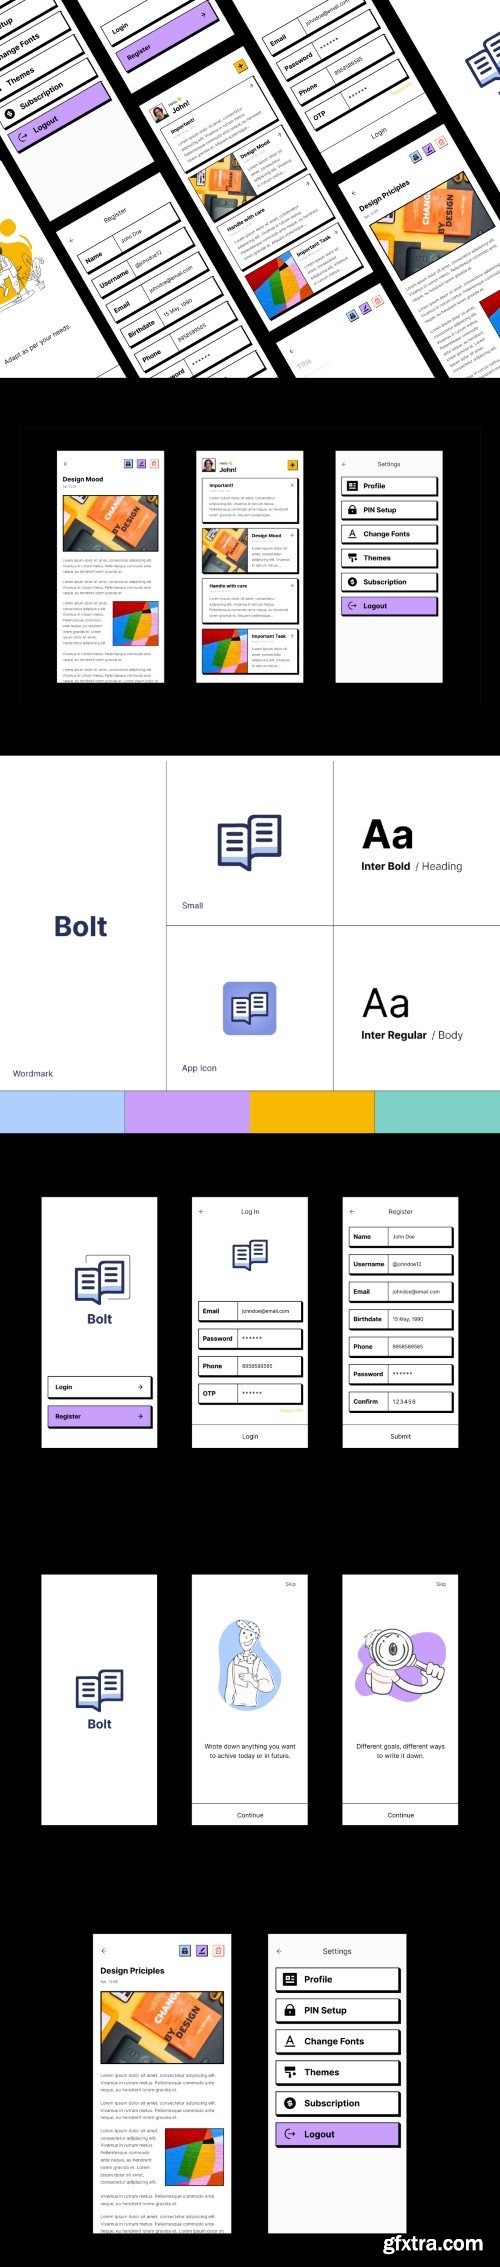 UI8 - BOLT - Notes app (Neubrutalism Ui Design)